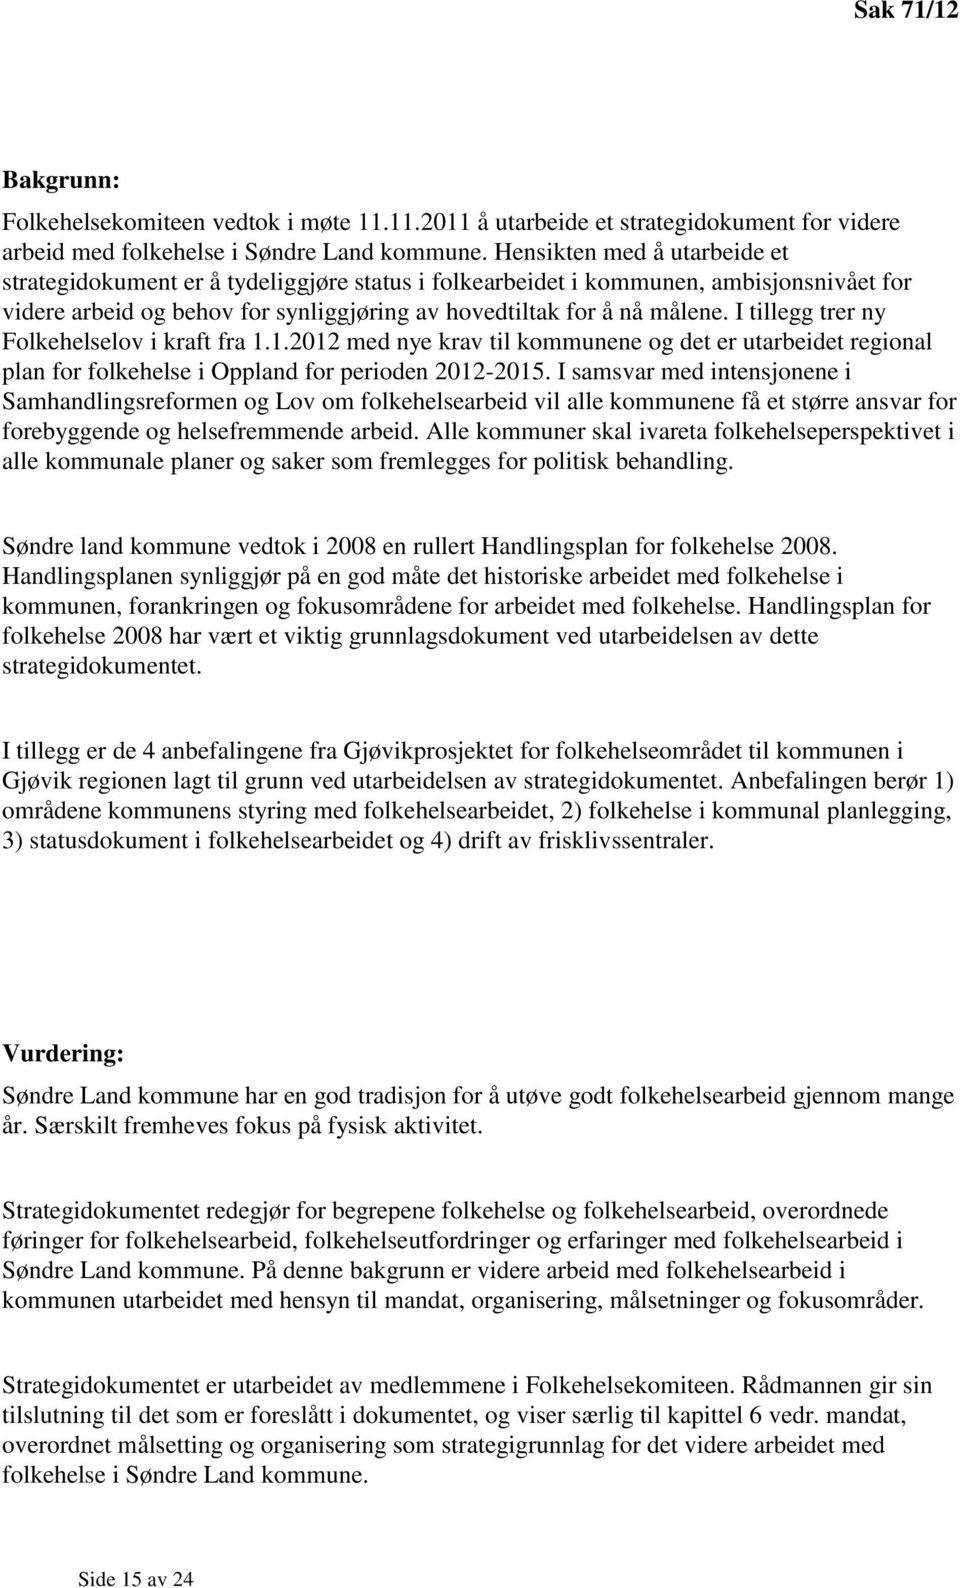 I tillegg trer ny Folkehelselov i kraft fra 1.1.2012 med nye krav til kommunene og det er utarbeidet regional plan for folkehelse i Oppland for perioden 2012-2015.